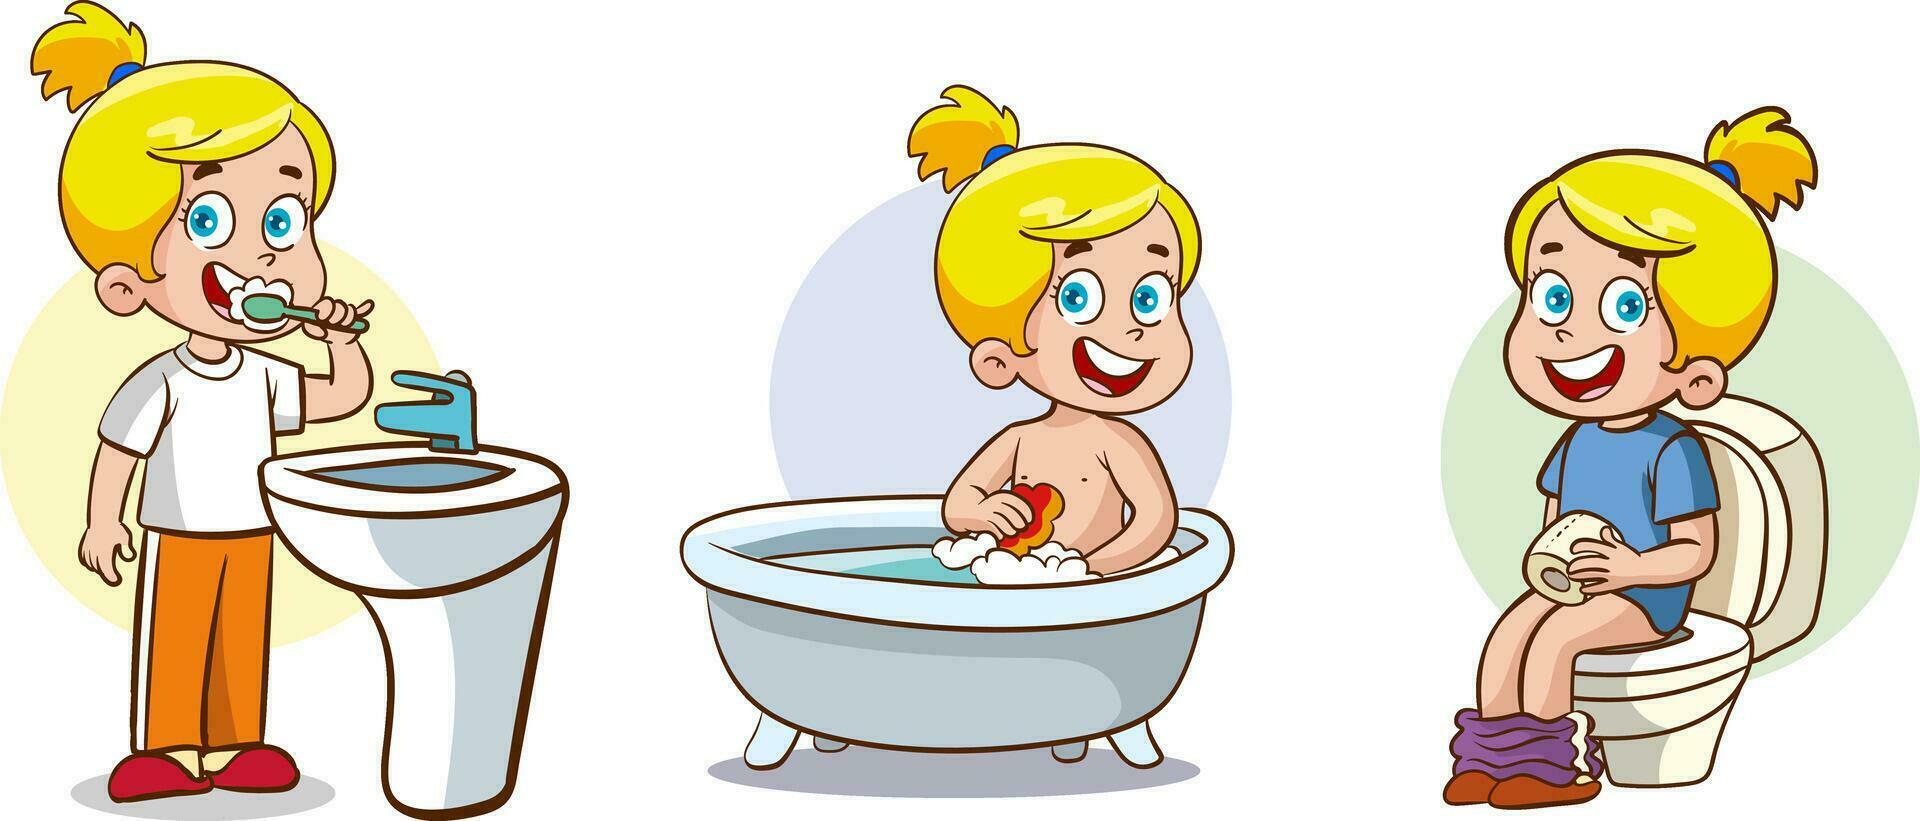 enfants du quotidien routine dans le salle de bain.vecteur clipart illustration. vecteur